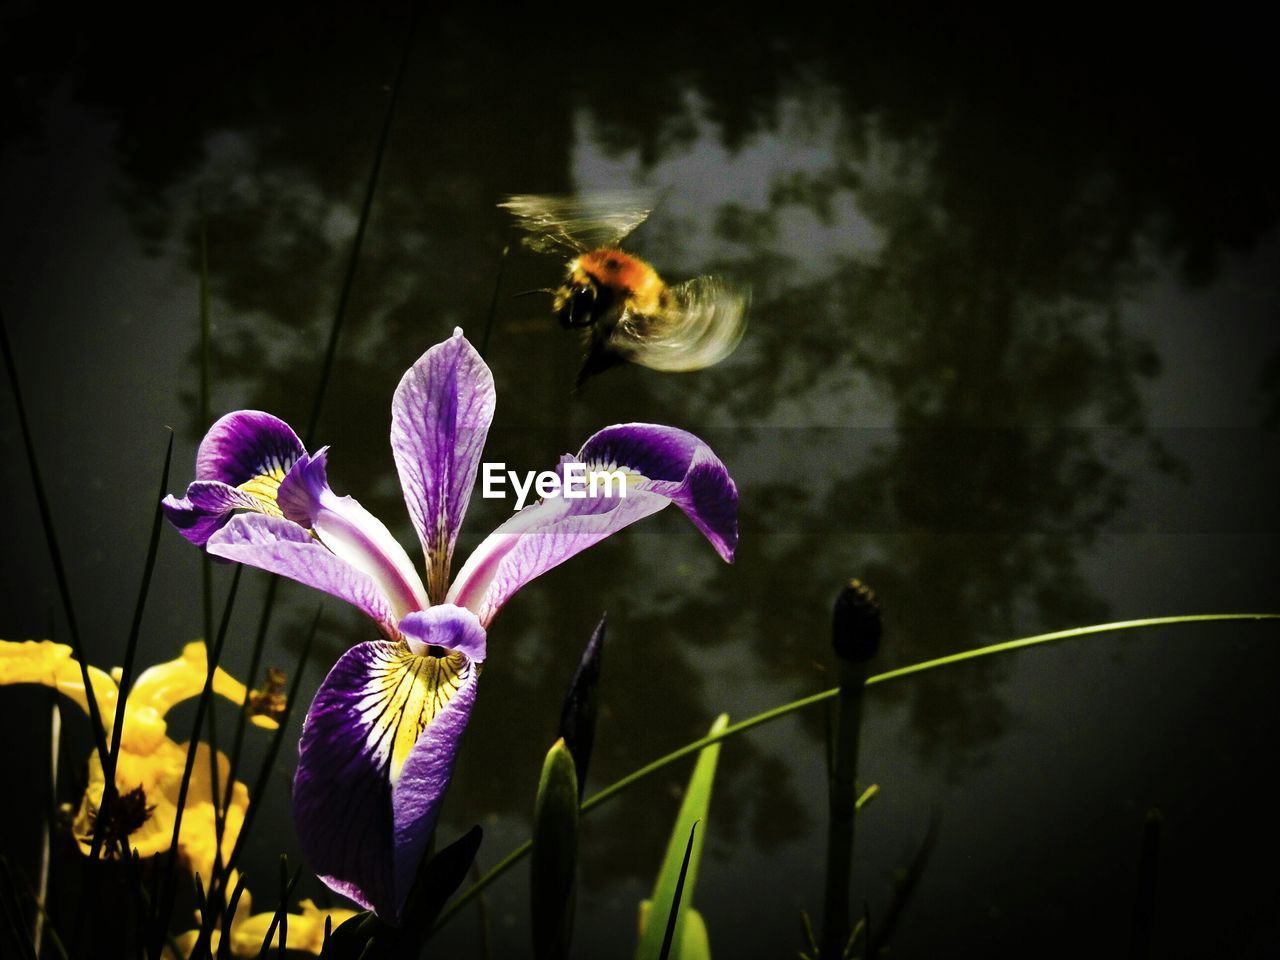 Bumblebee flying over purple flower